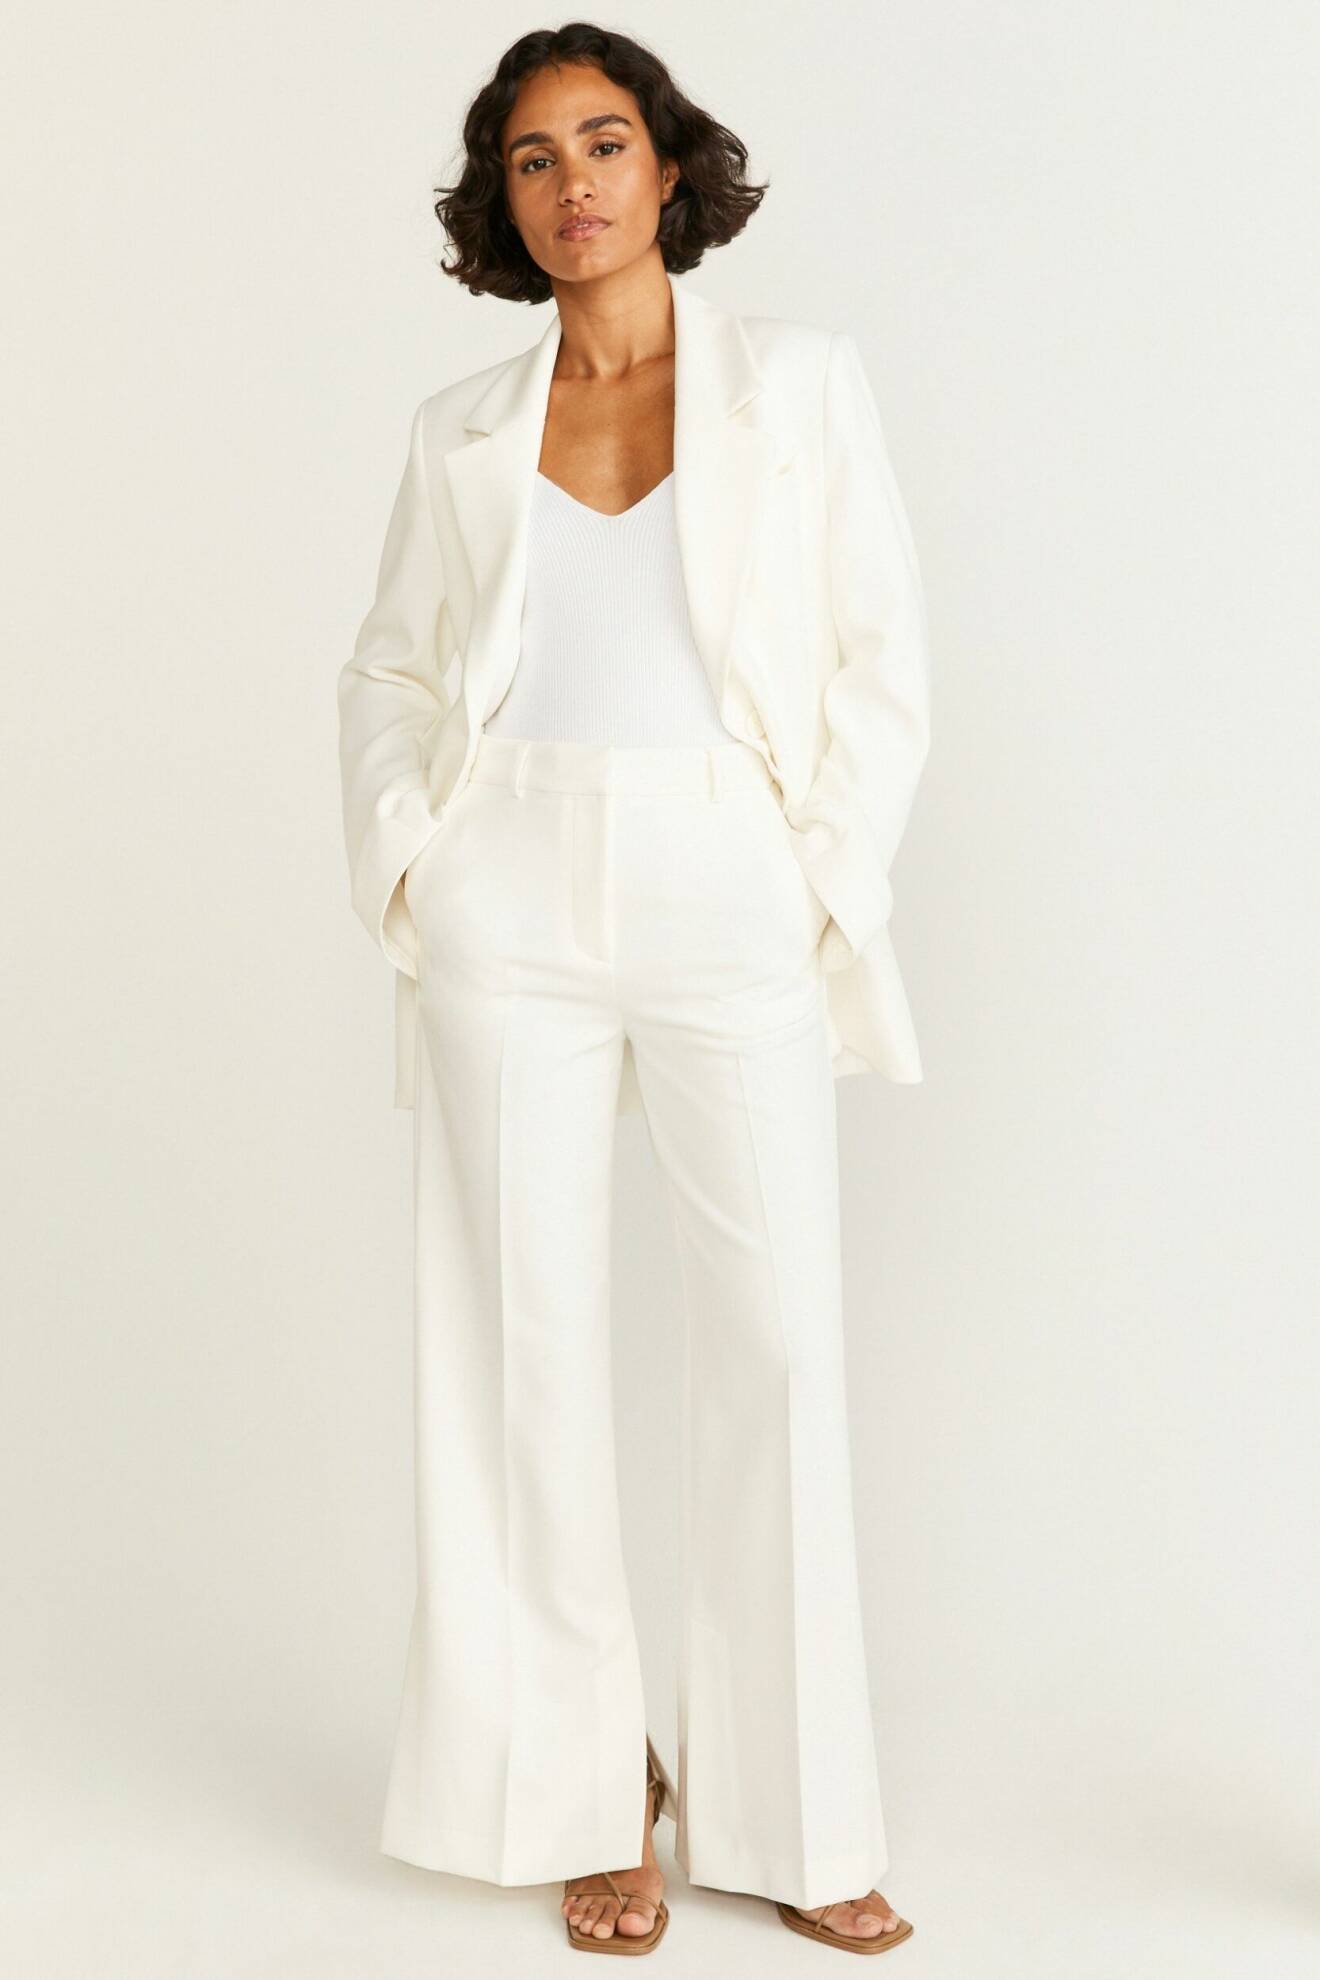 vit kostym för dam från stockh lm studio